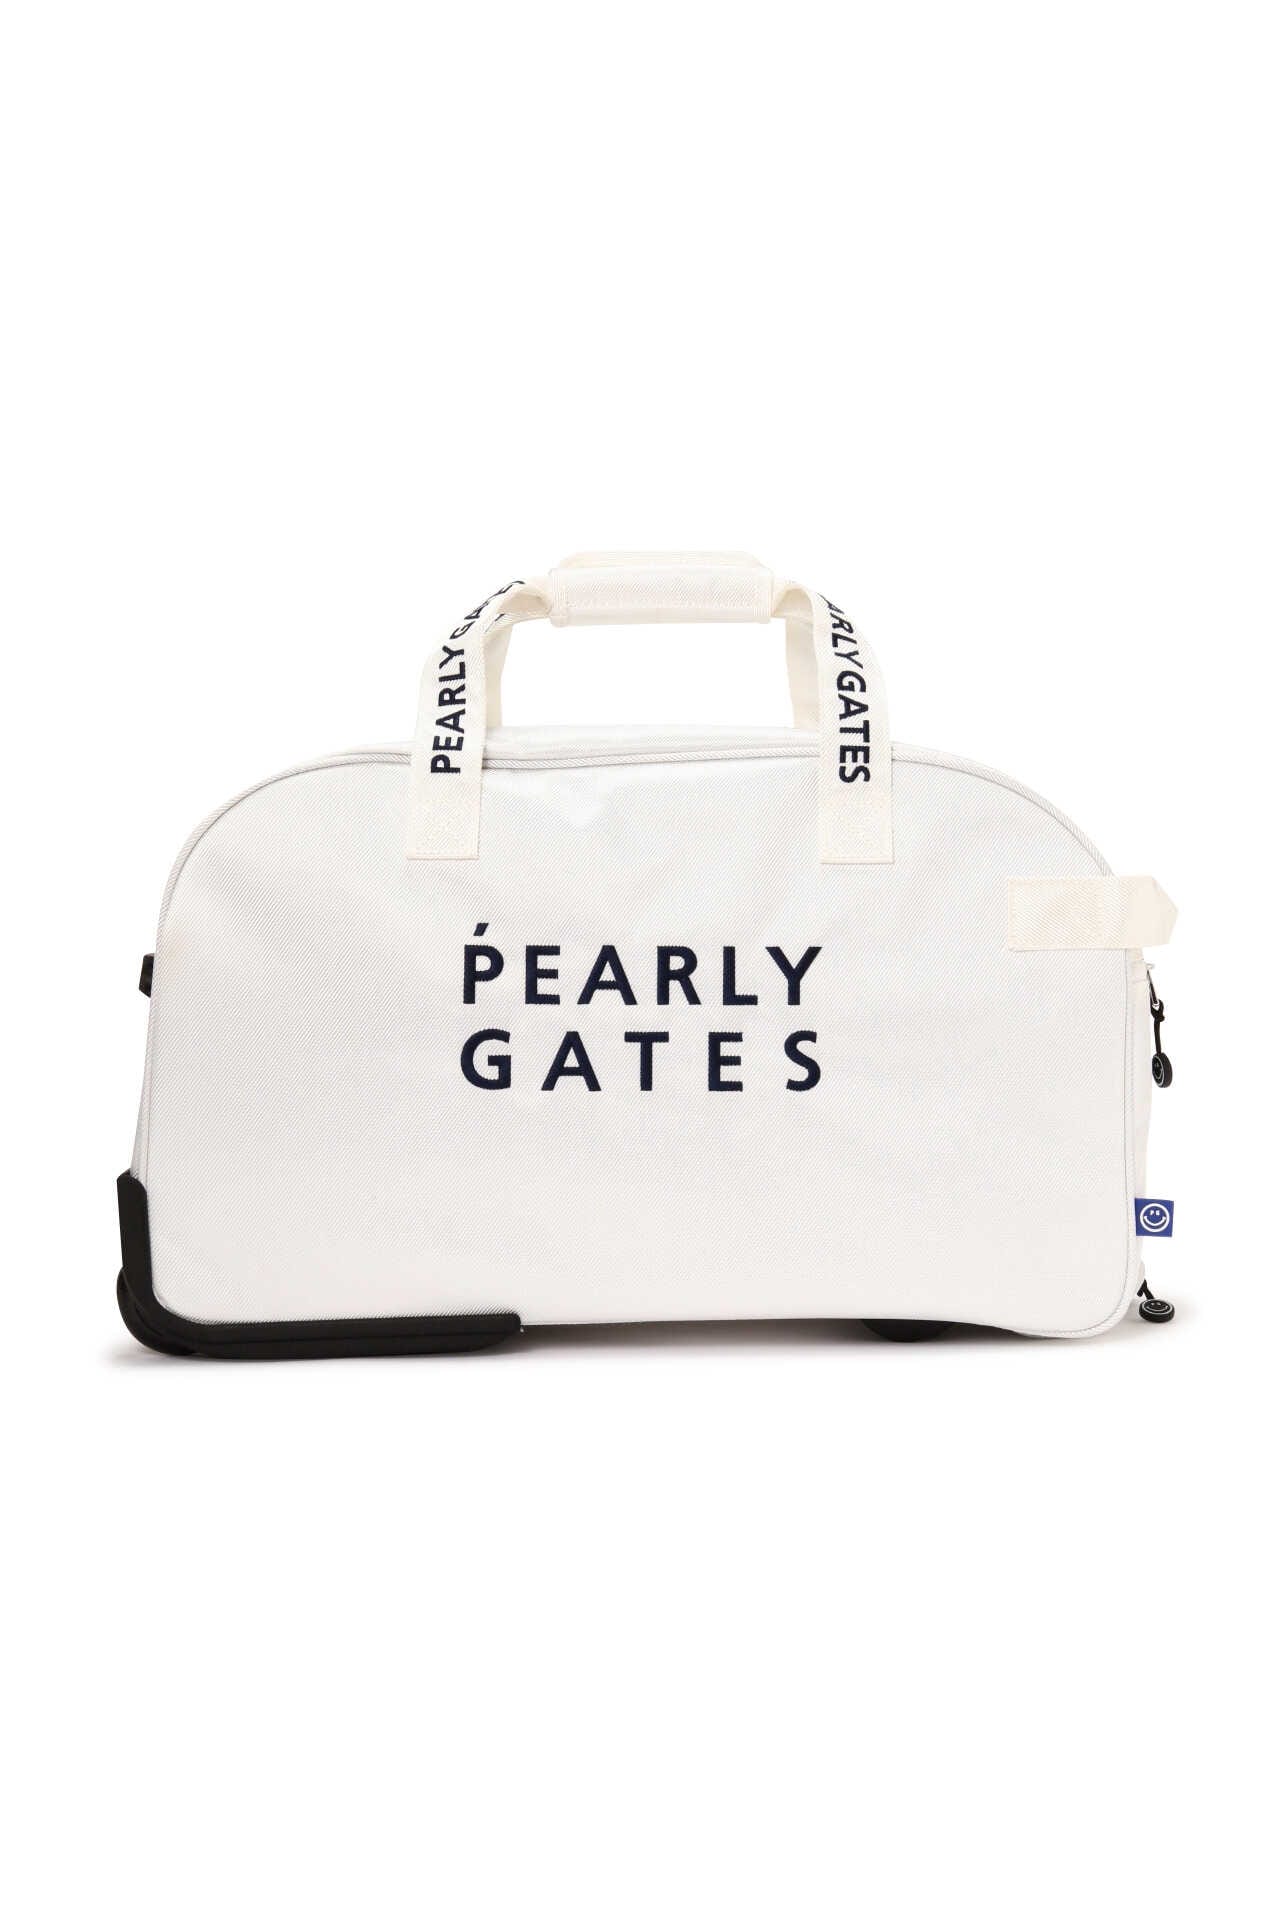 【新品】PEARLY GATES パーリーゲイツ ボストンバッグ